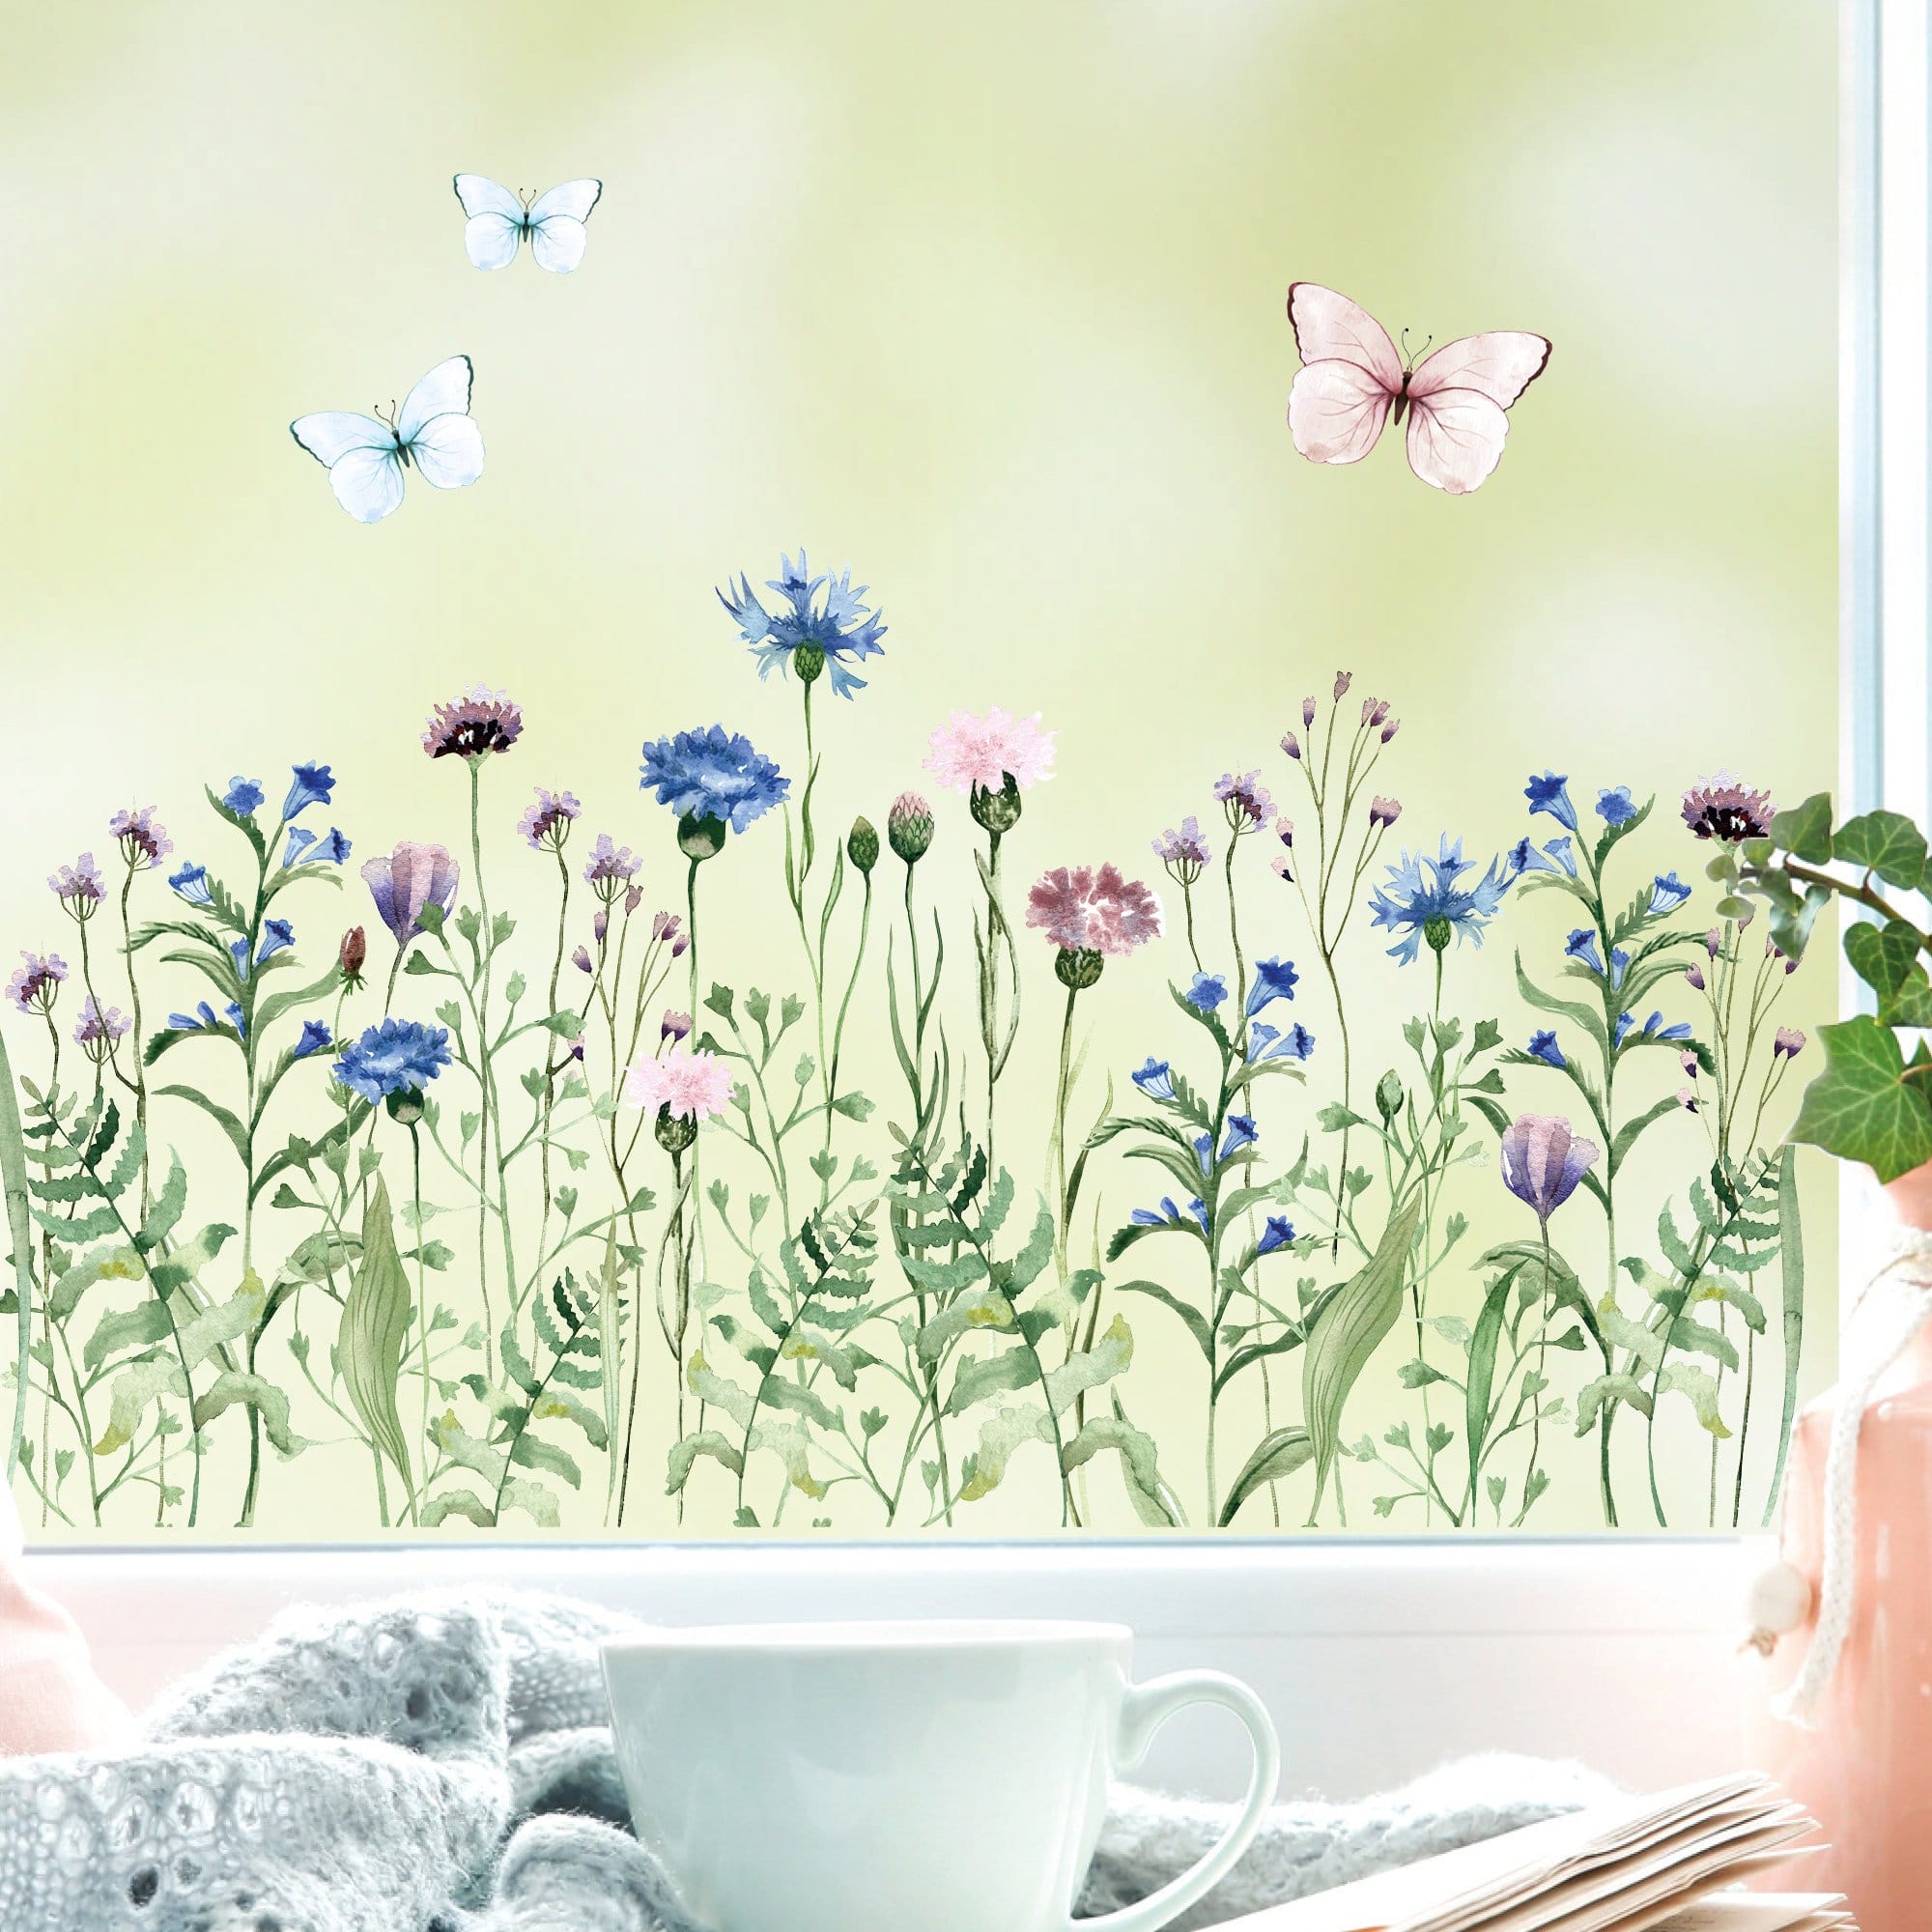 Fensterbild Kornblumenwiese wiederverwendbar blau pastell Blumenwiese mit Schmetterlingen Hummeln Fensterdekoration